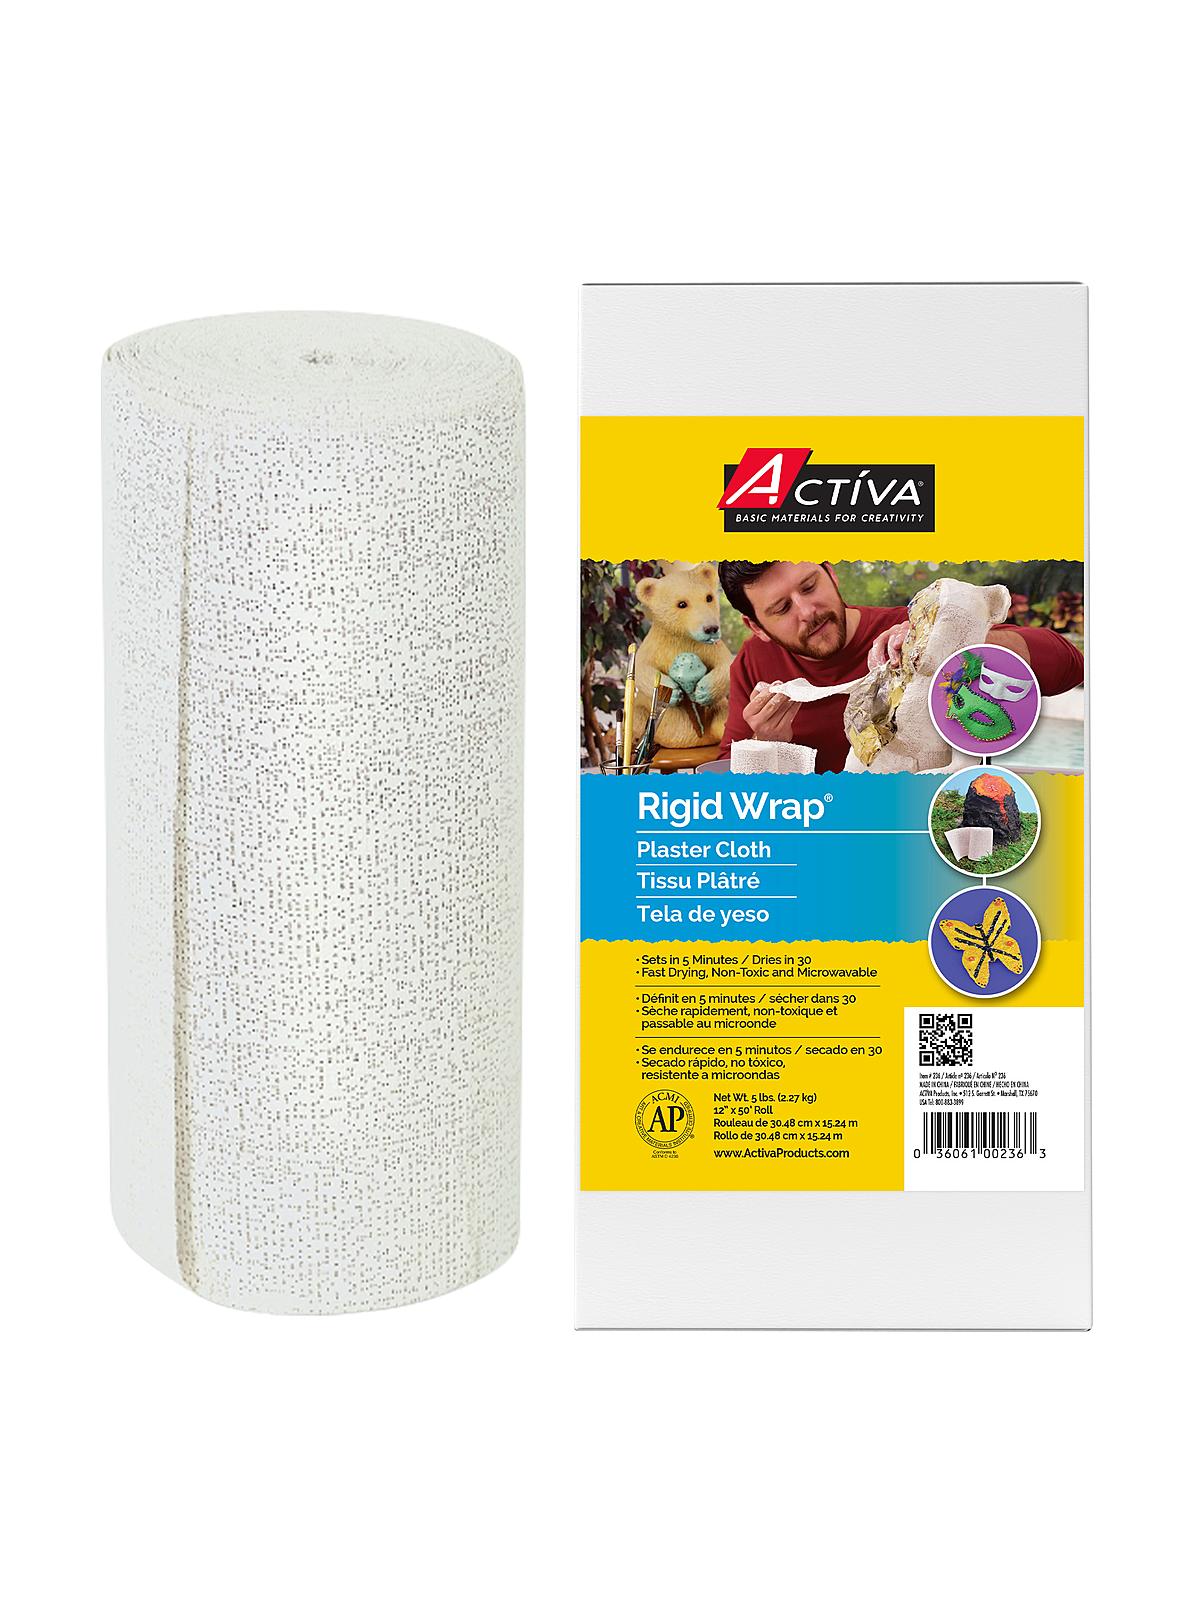 Rigid Wrap Plaster Cloth 5 Lb. Spool